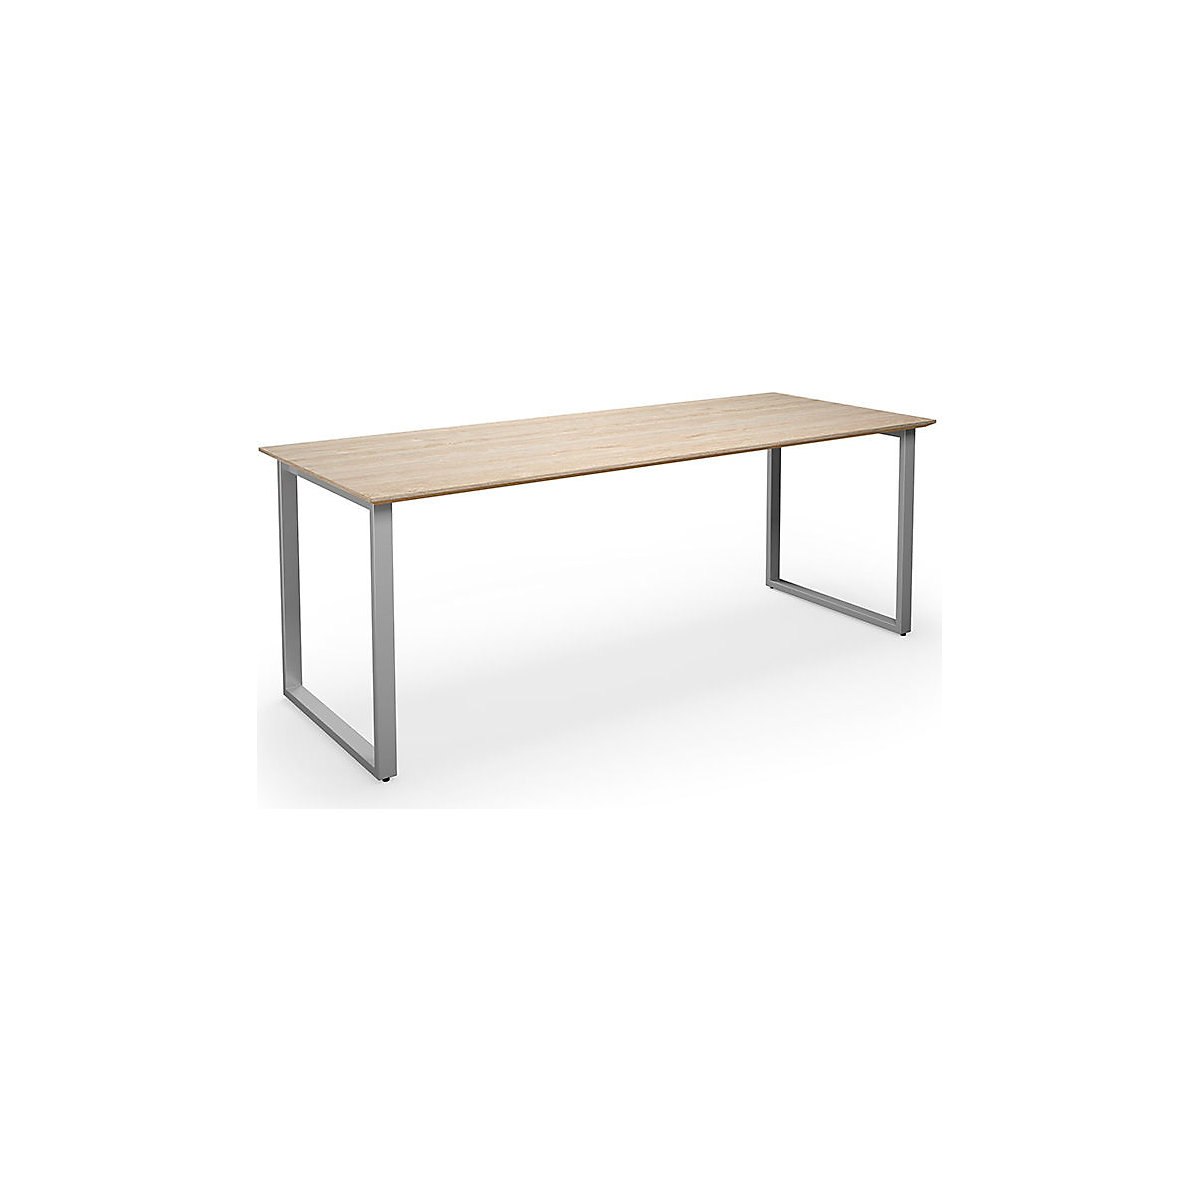 DUO-O Trend multi-purpose desk, straight tabletop, WxD 1800 x 800 mm, oak, silver-4